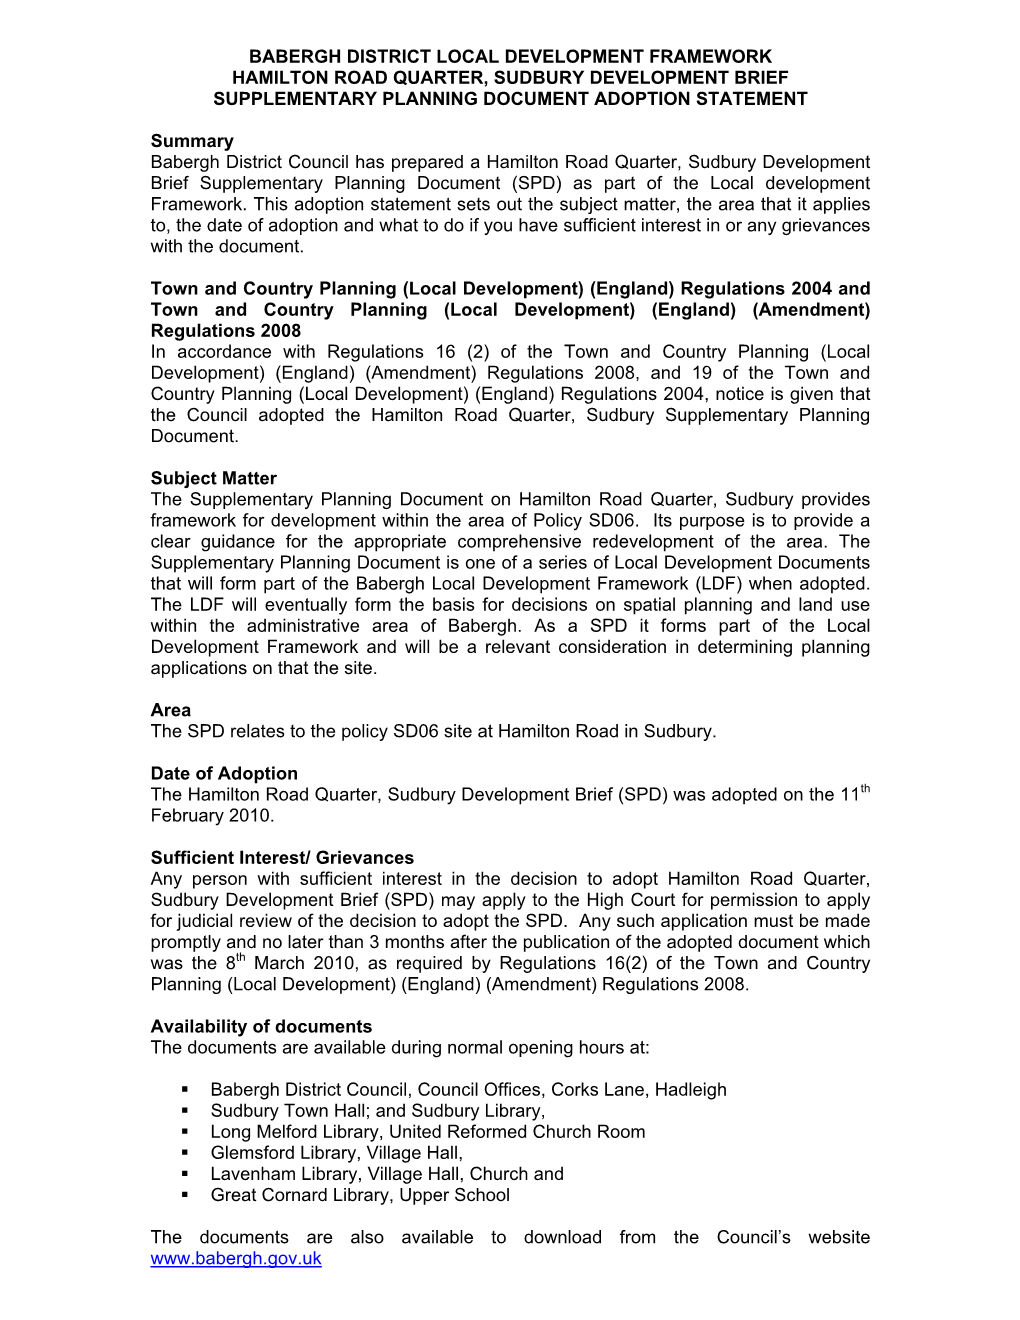 Babergh District Local Development Framework Hamilton Road Quarter, Sudbury Development Brief Supplementary Planning Document Adoption Statement